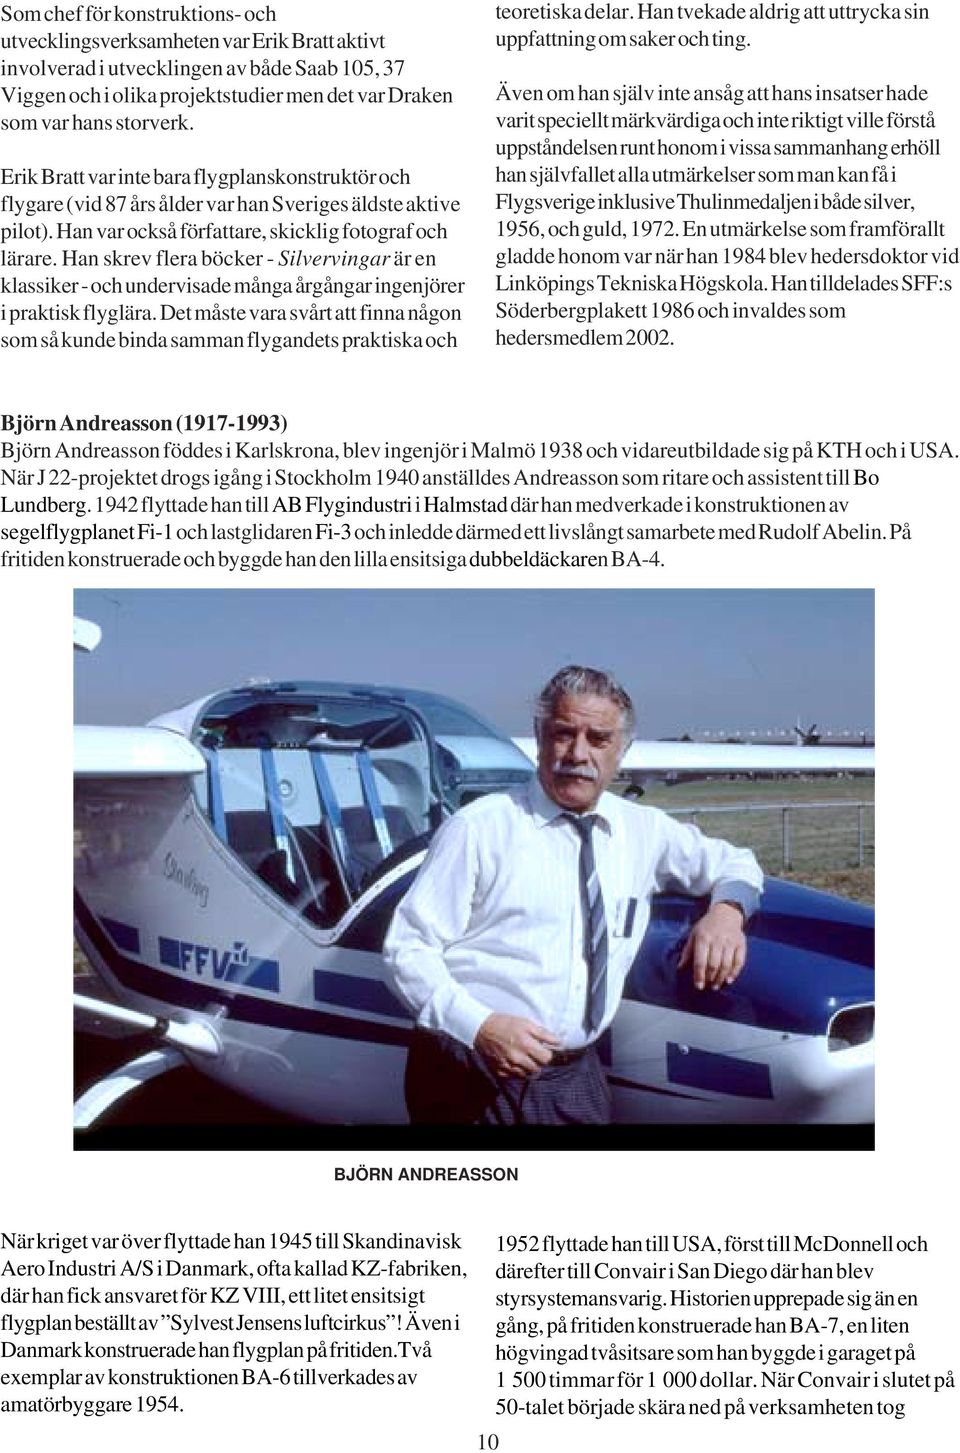 Han skrev flera böcker - Silvervingar är en klassiker - och undervisade många årgångar ingenjörer i praktisk flyglära.